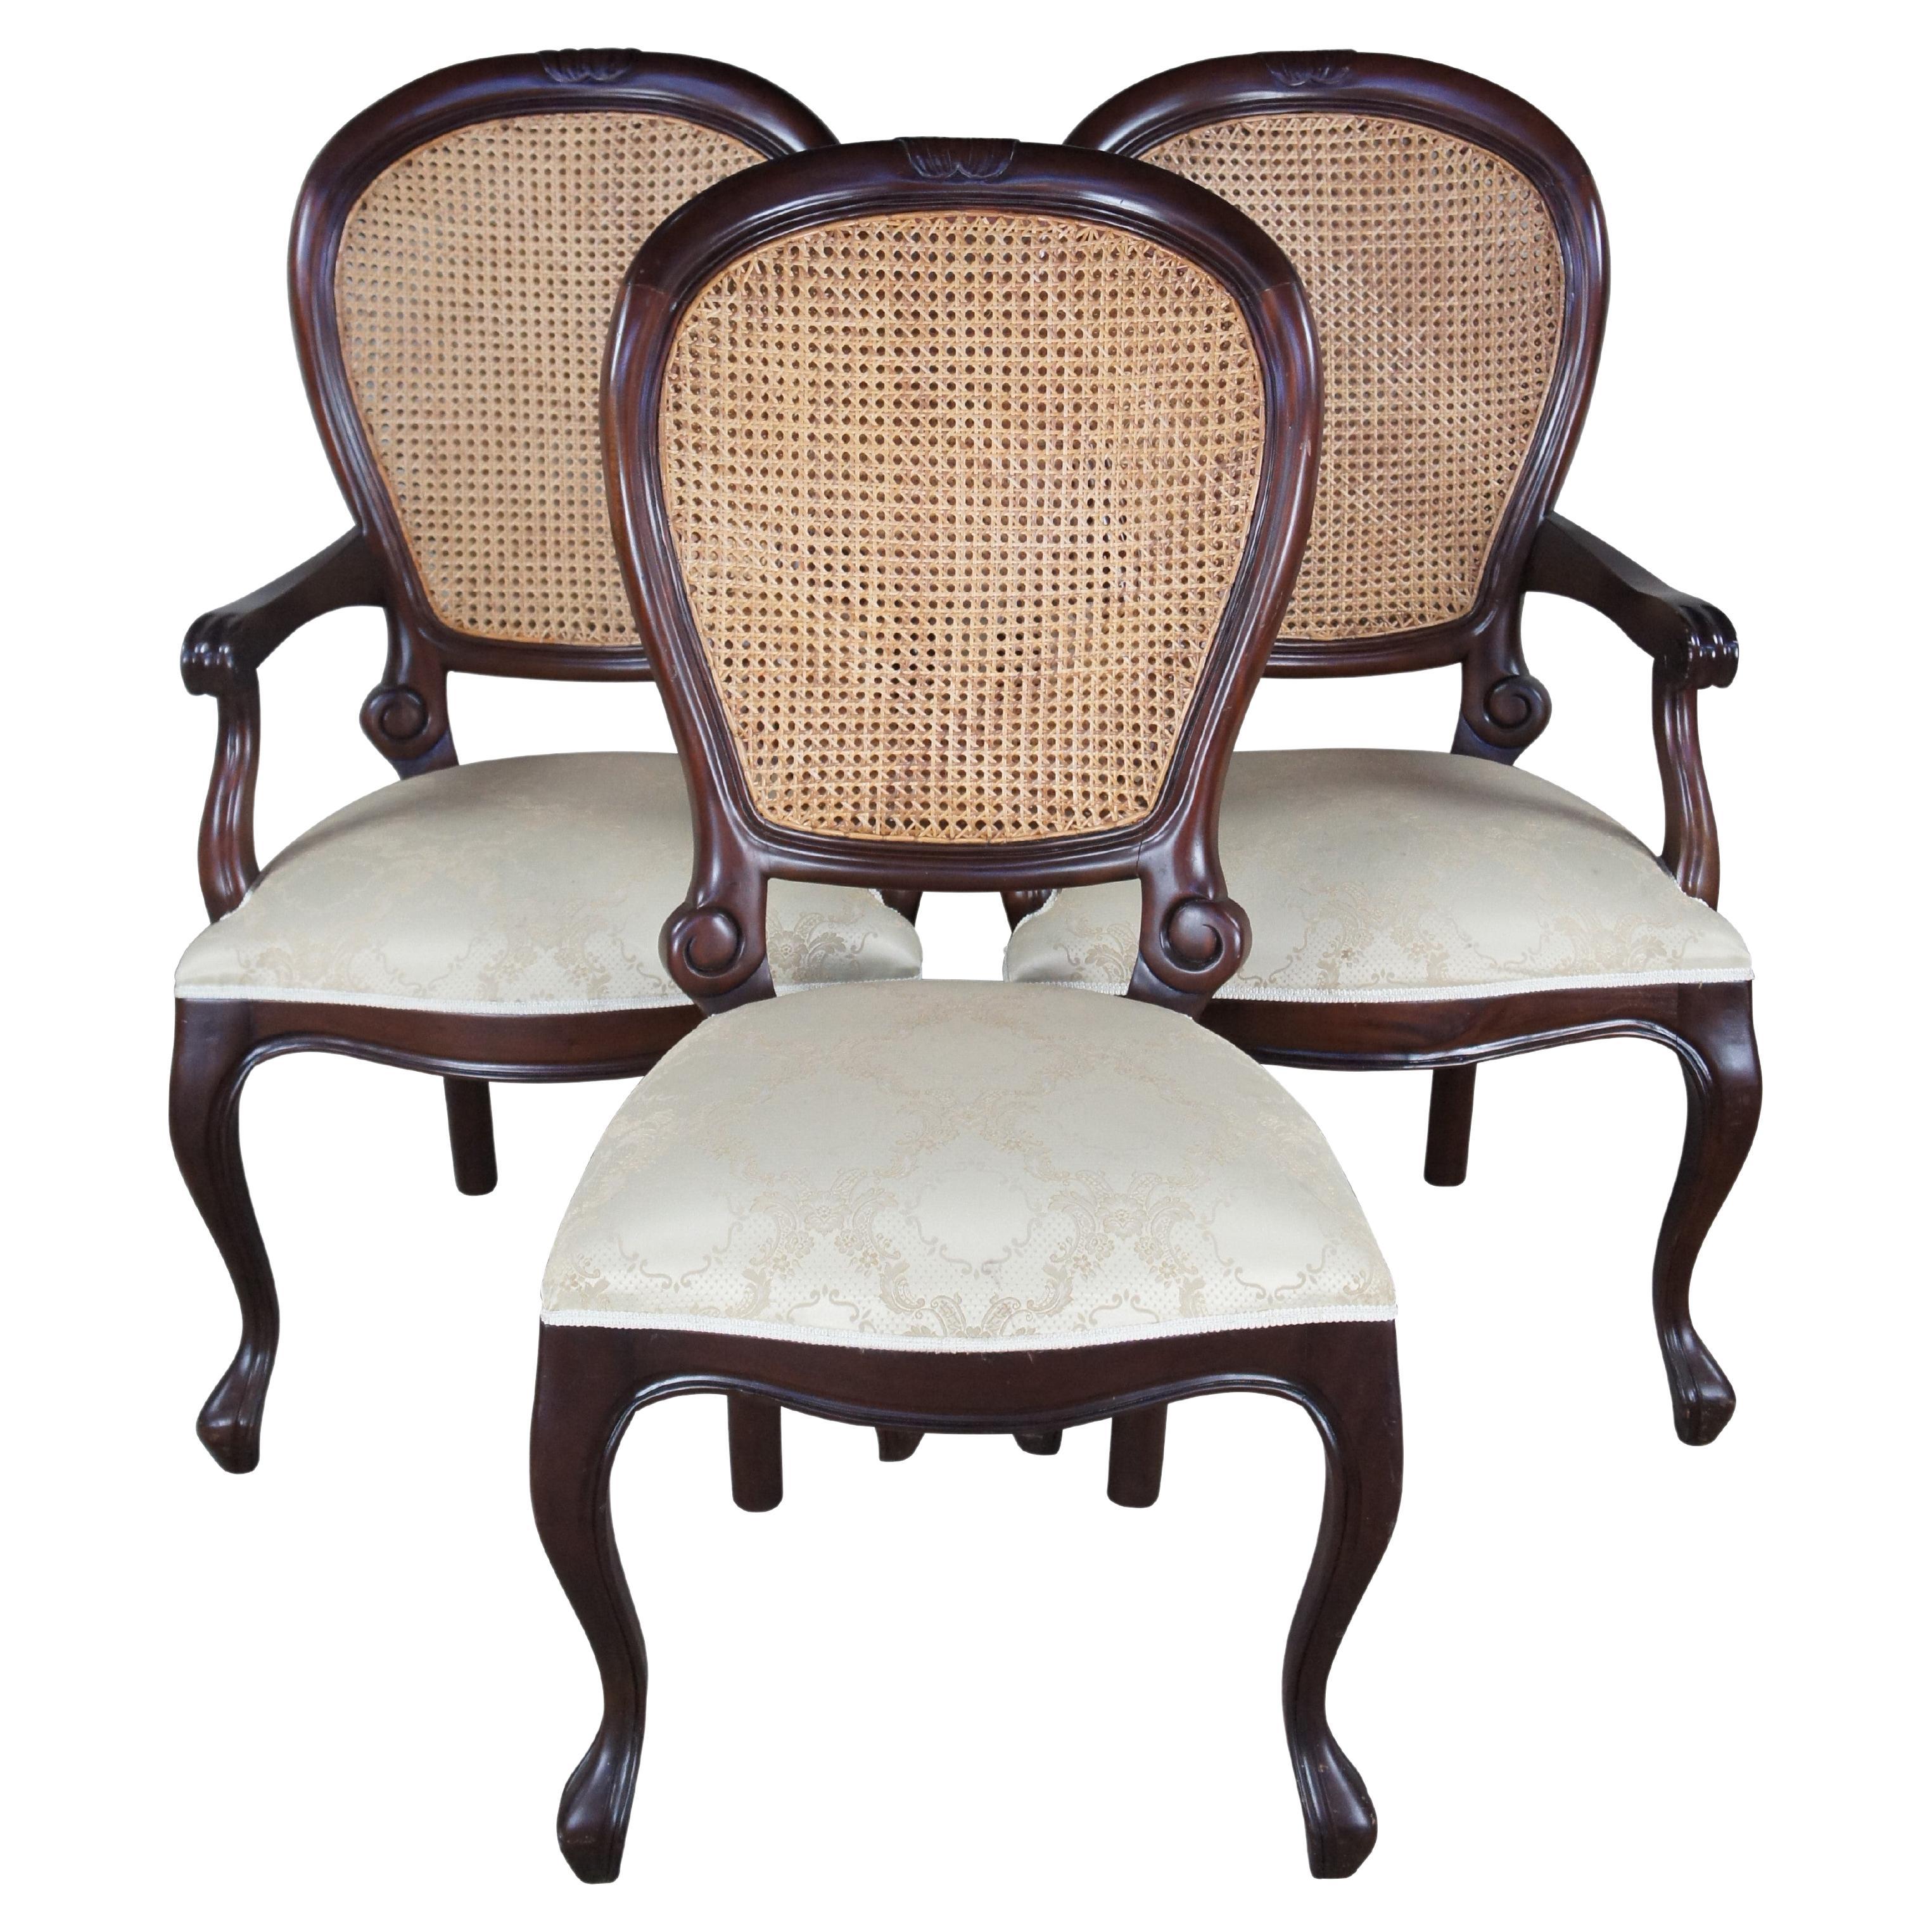 3 viktorianische Revival-Esszimmerstühle aus Mahagoni mit Ballonrückenlehne und Schilfrohr, Seidenbrokat-Sitzen